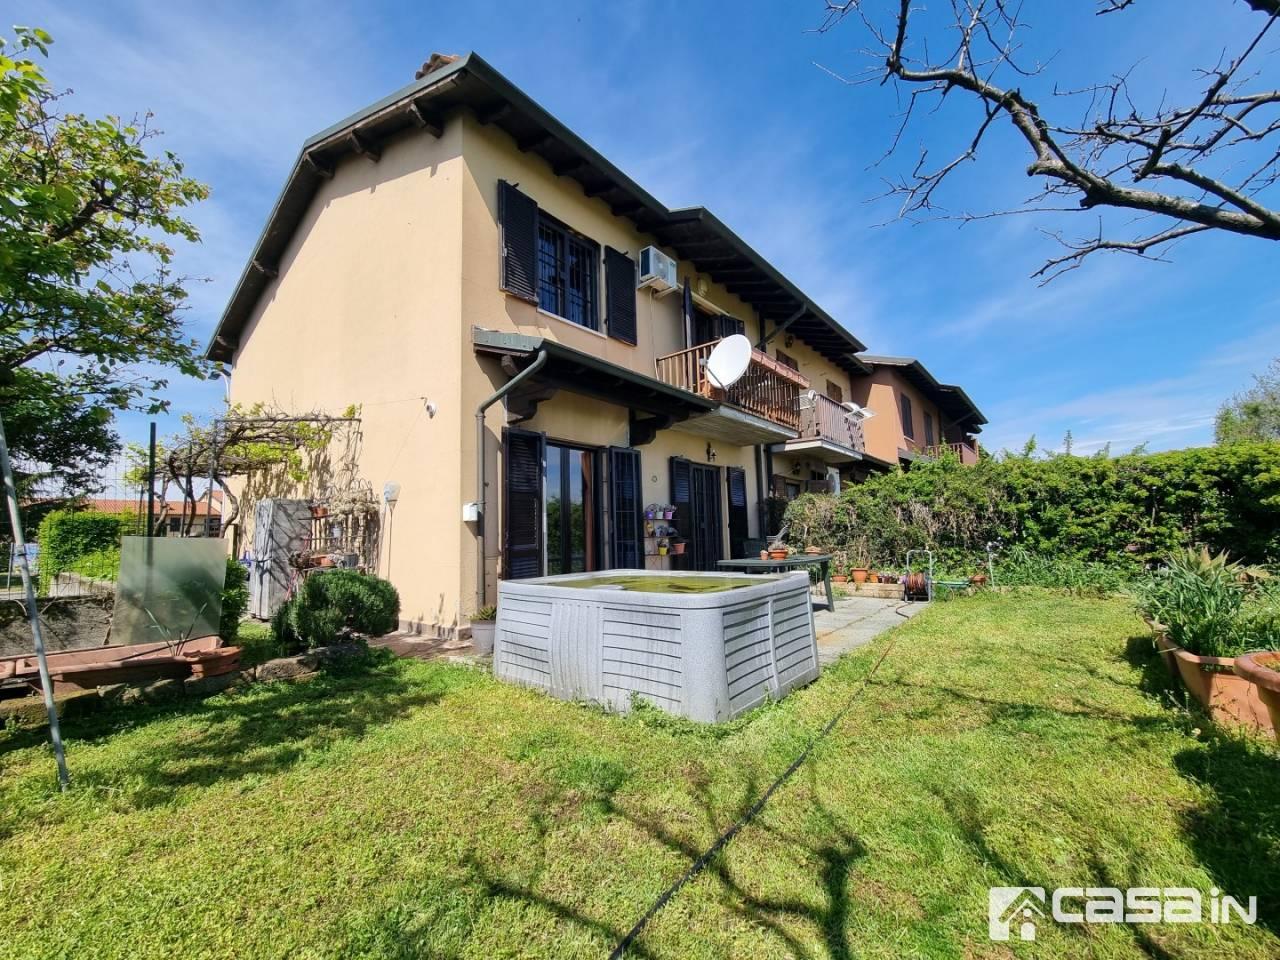 Villa in vendita a Capriate San Gervasio